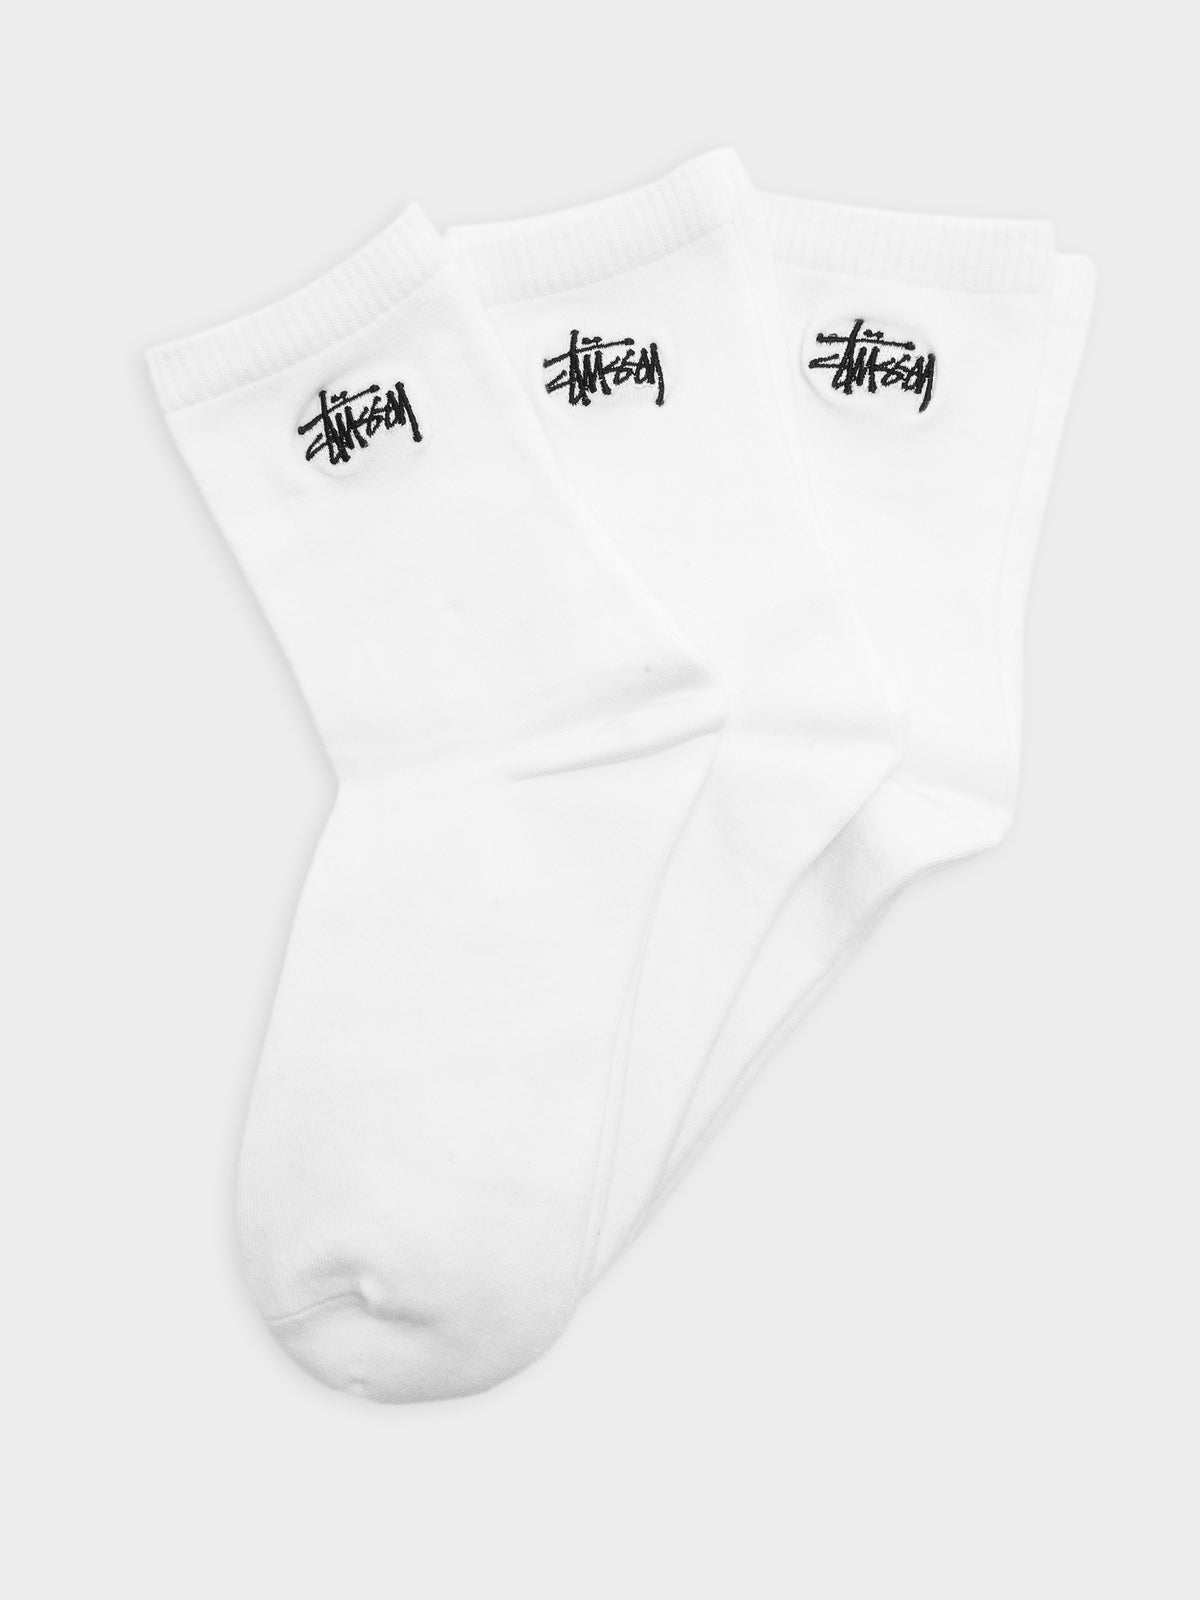 3 Pairs of Graffiti Crew Socks in White